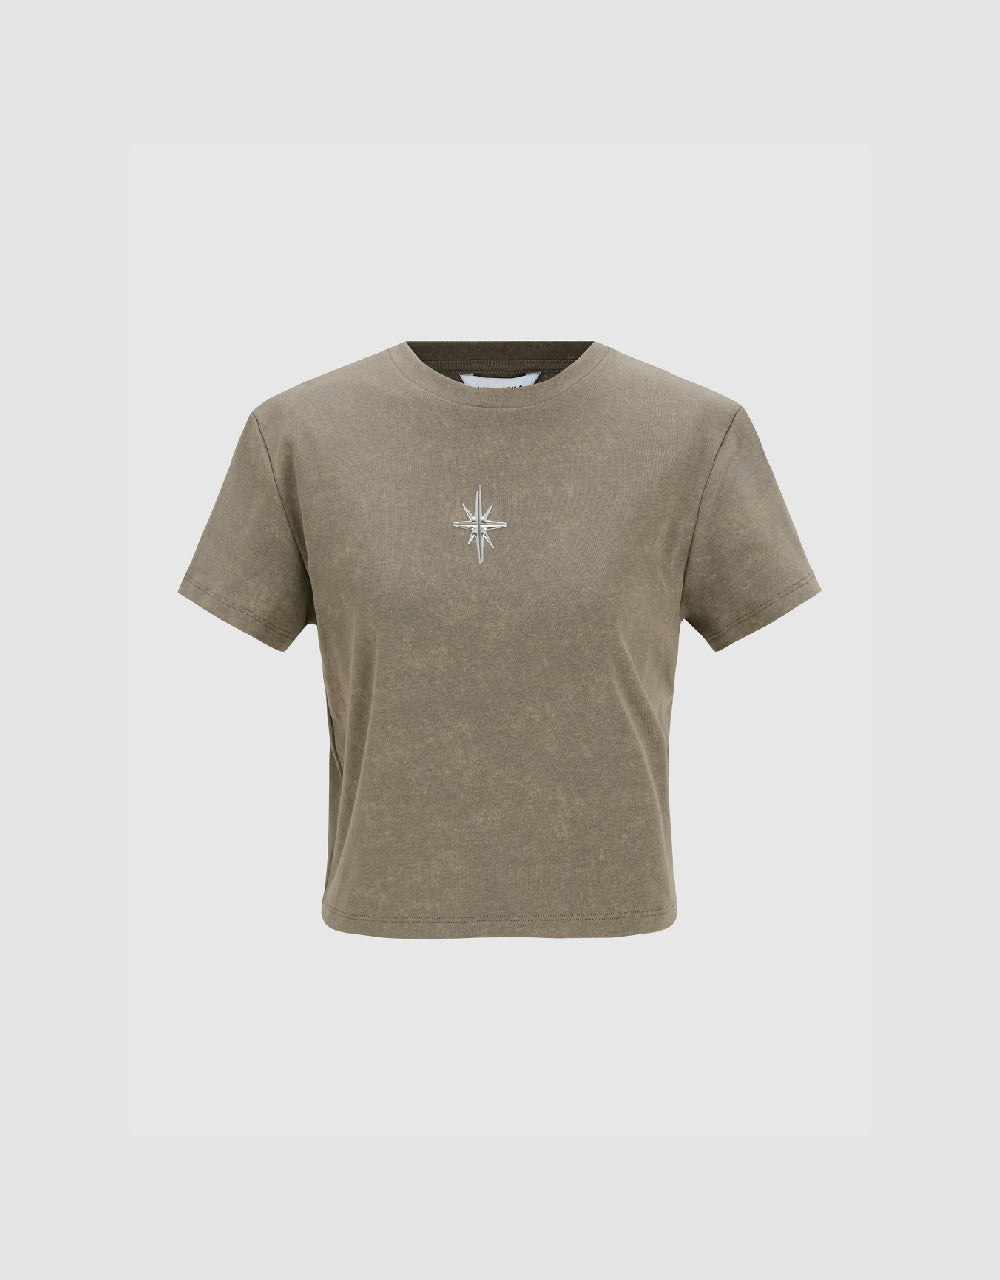 Hexagram Printed Crew Neck Skinny T-Shirt